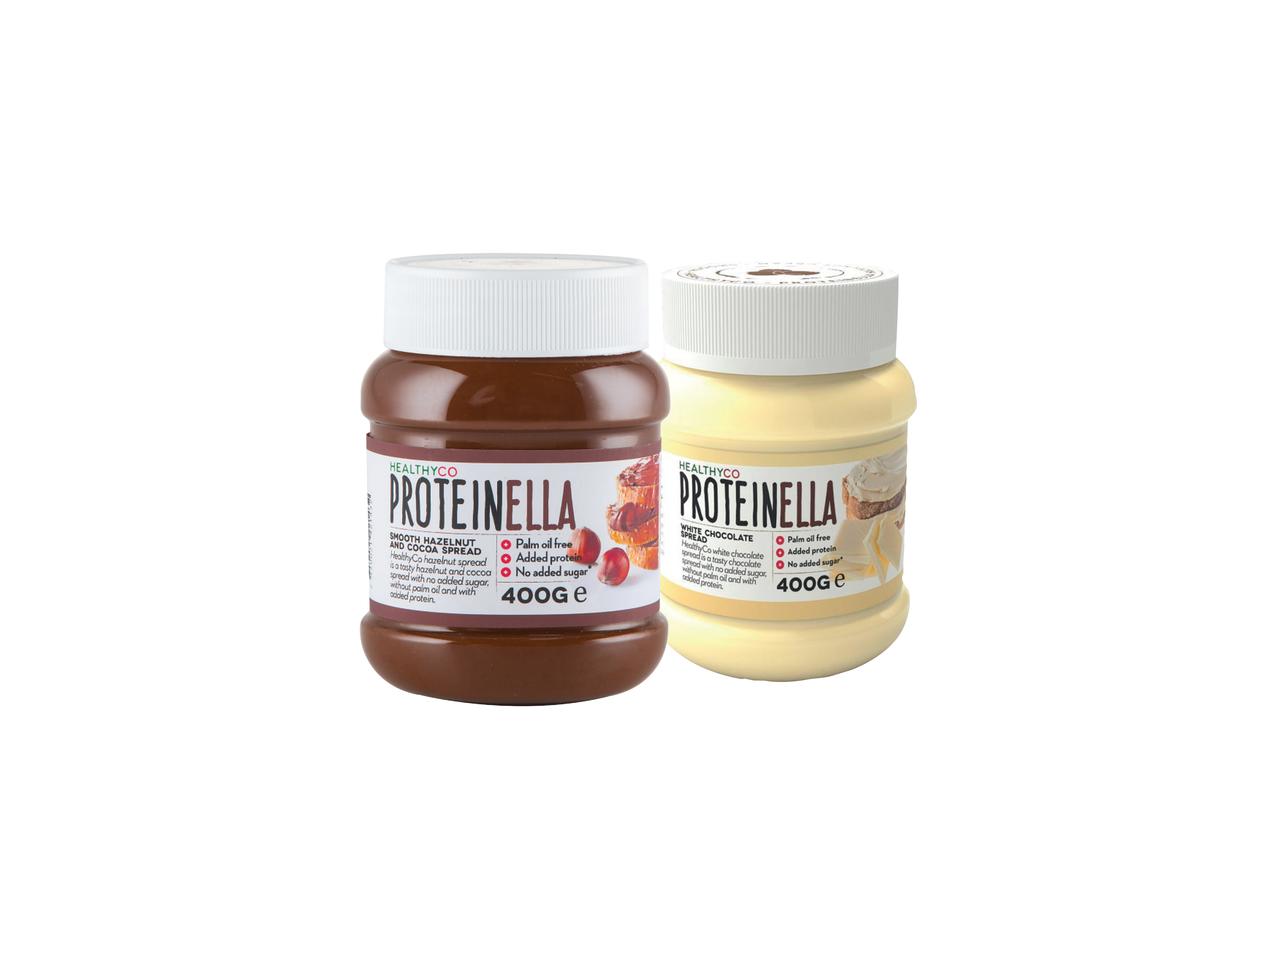 Proteinella Hazelnut Spread